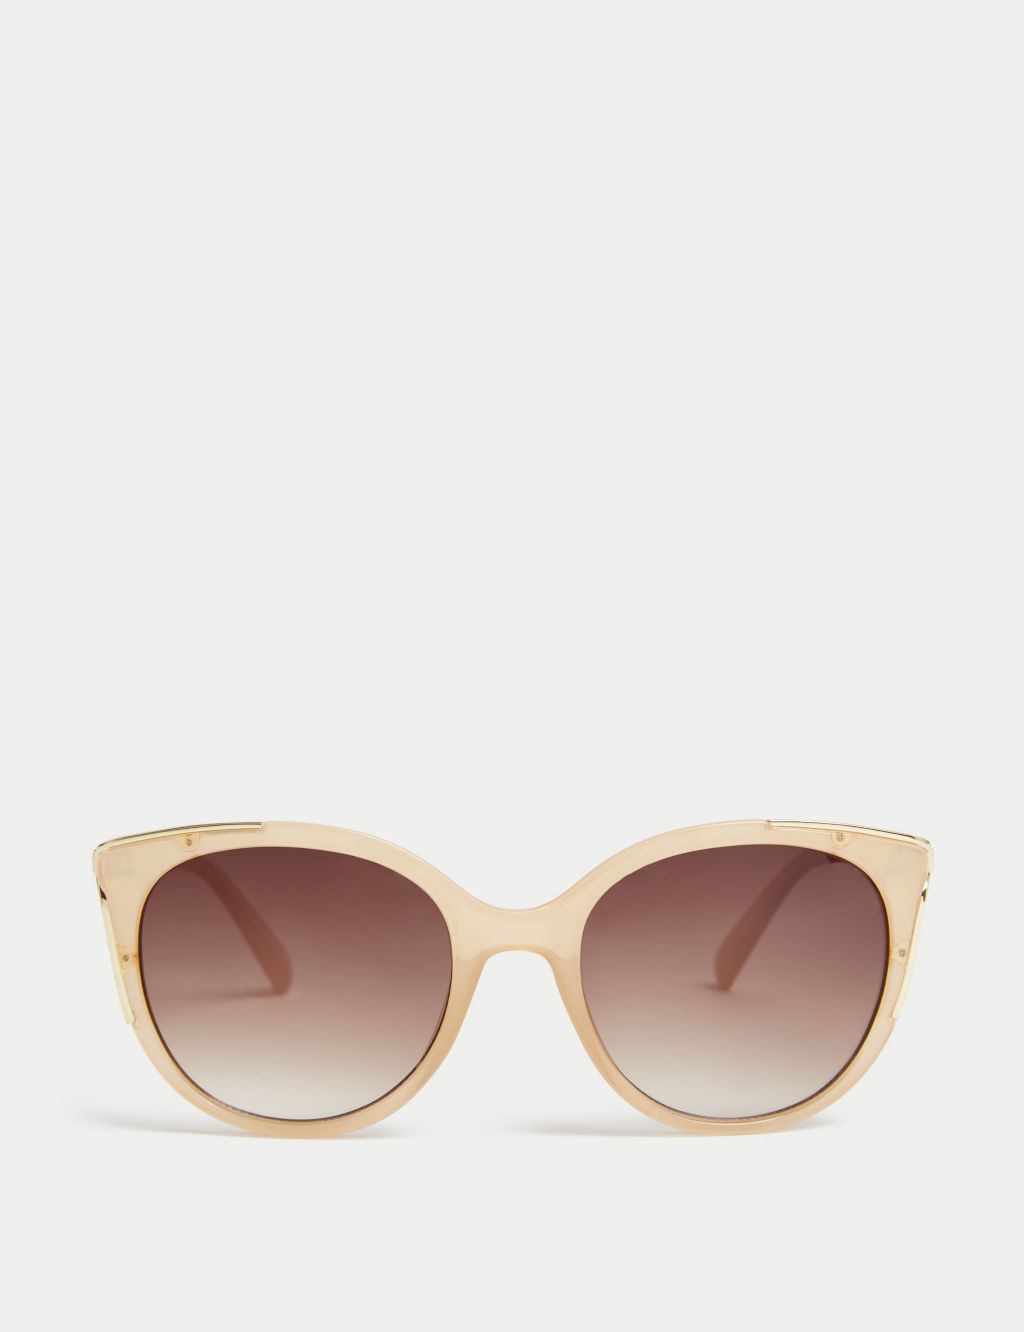 Women’s Sunglasses | M&S